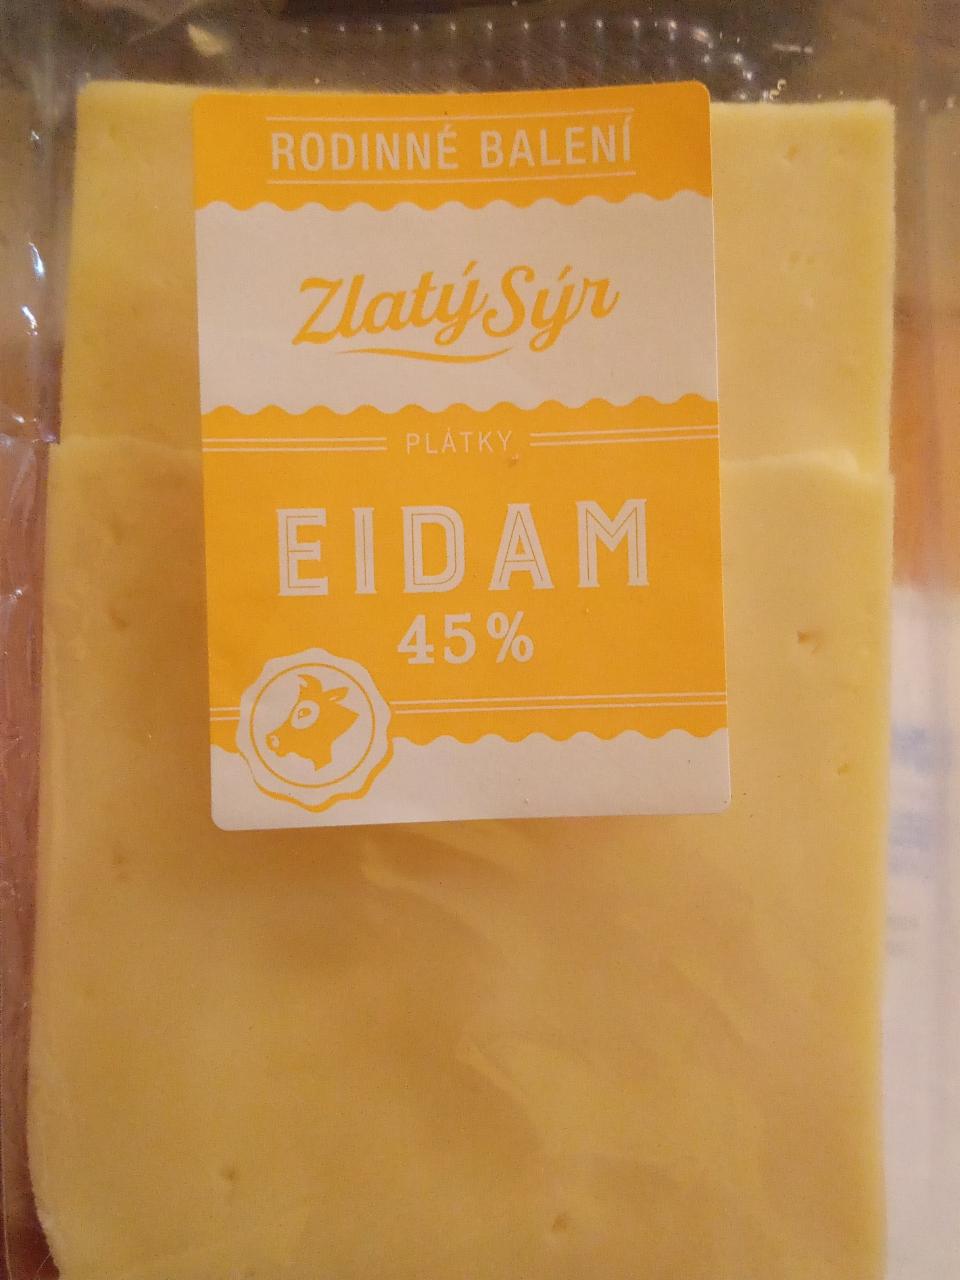 Fotografie - Eidam 45% plátky Zlatý sýr rodinné balení